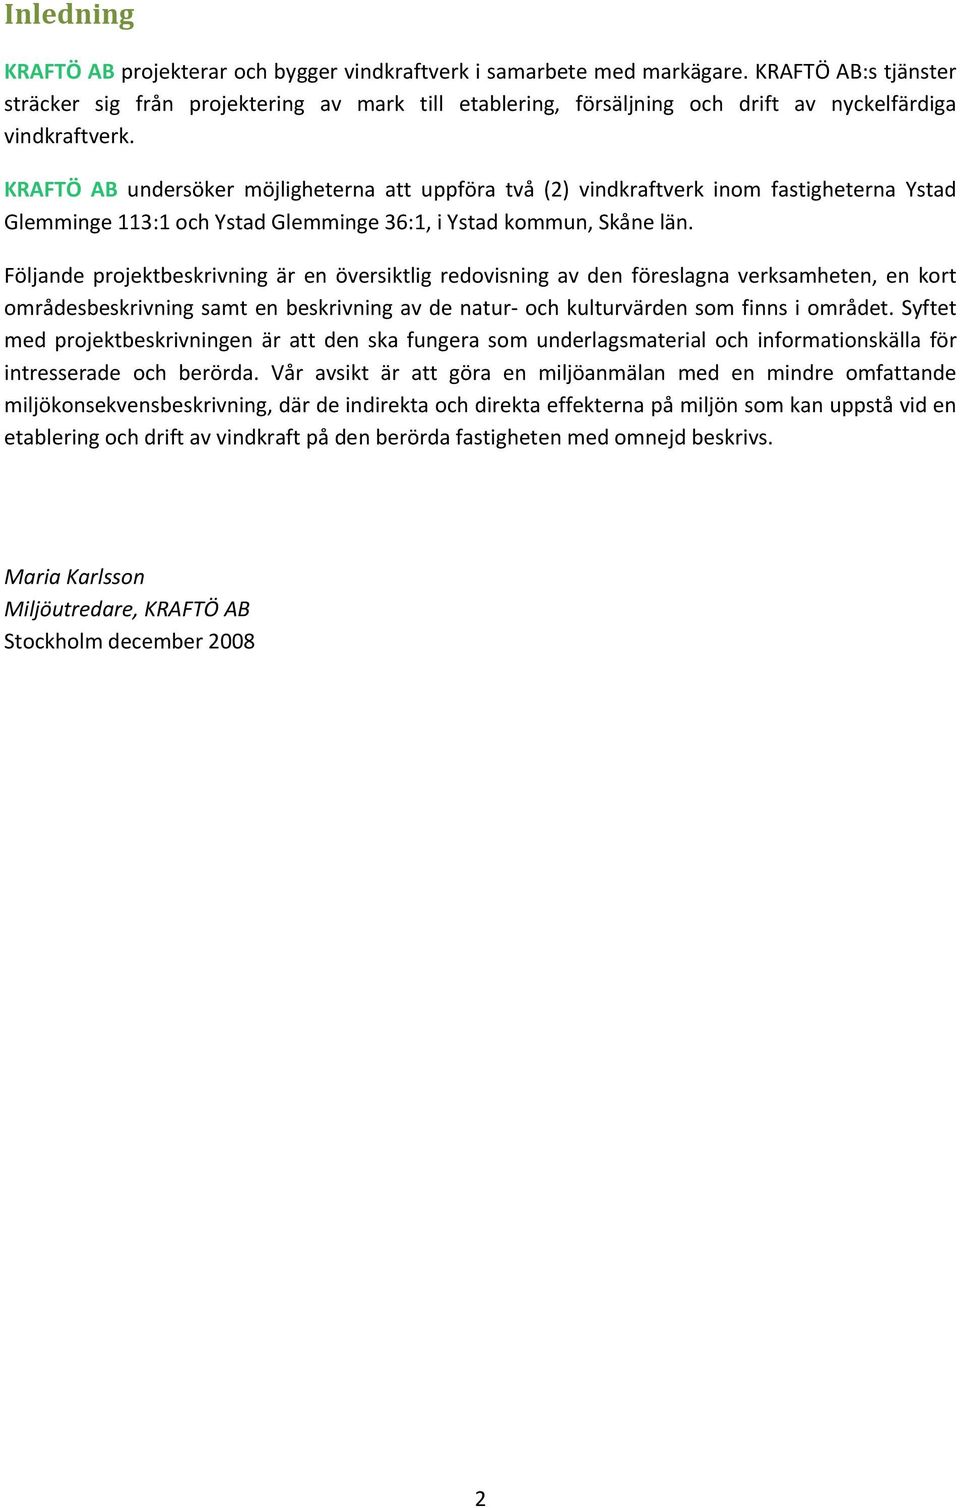 KRAFTÖ AB undersöker möjligheterna att uppföra två (2) vindkraftverk inom fastigheterna Ystad Glemminge 113:1 och Ystad Glemminge 36:1, i Ystad kommun, Skåne län.